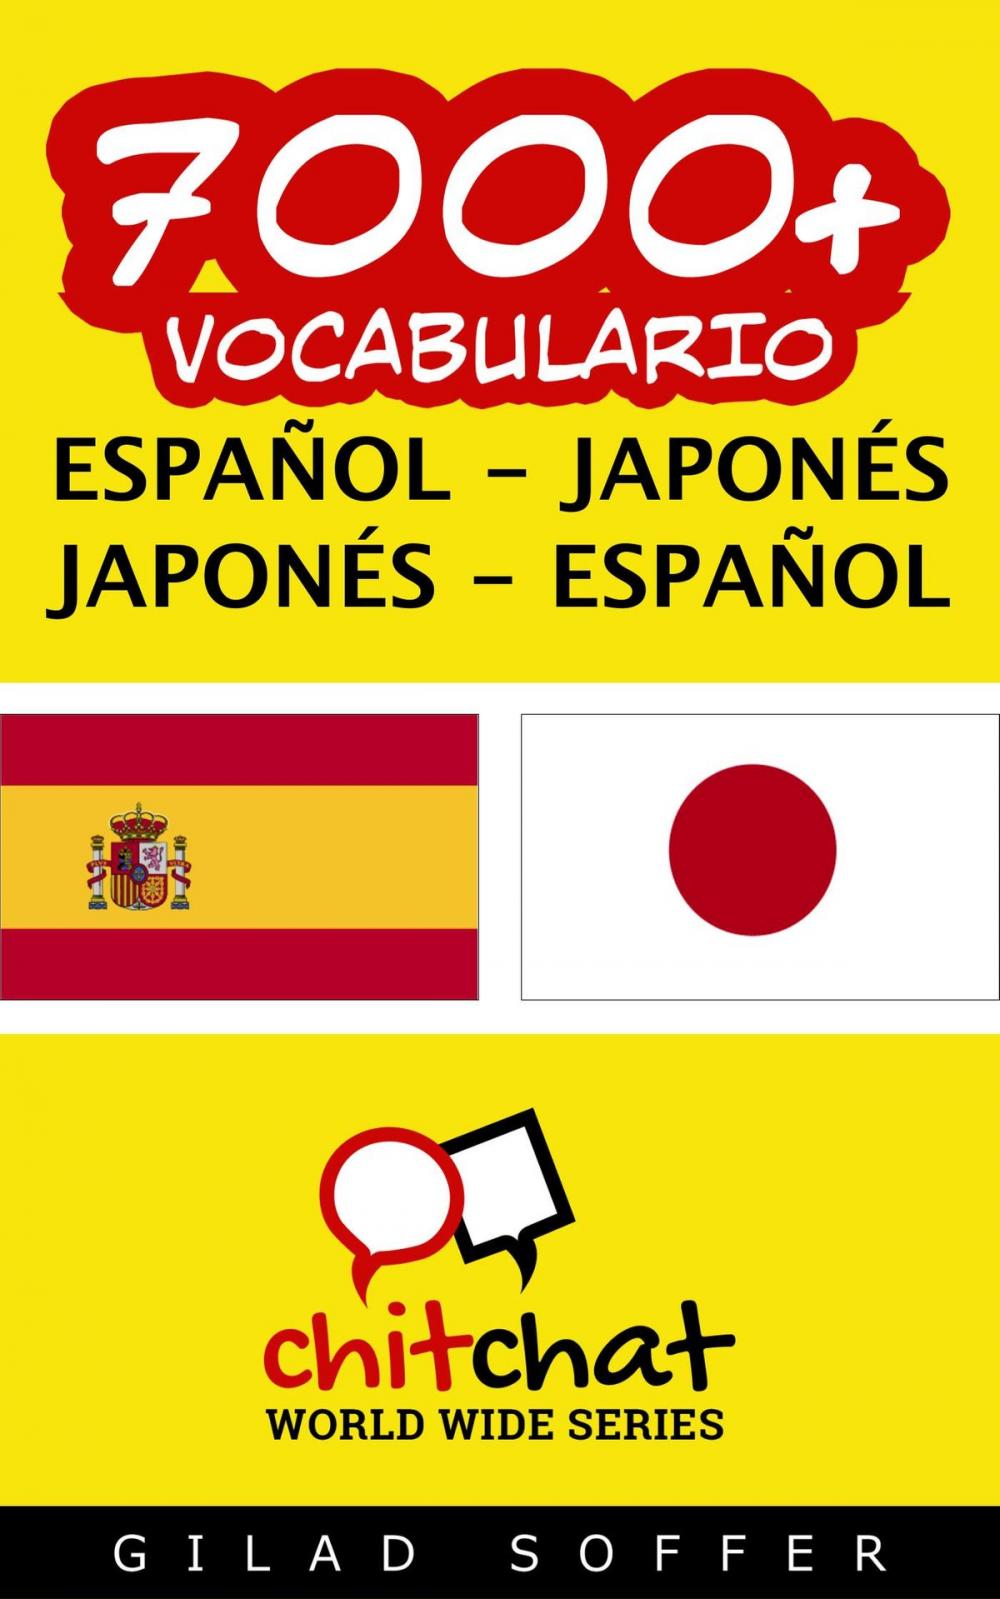 Big bigCover of 7000+ vocabulario español - japonés